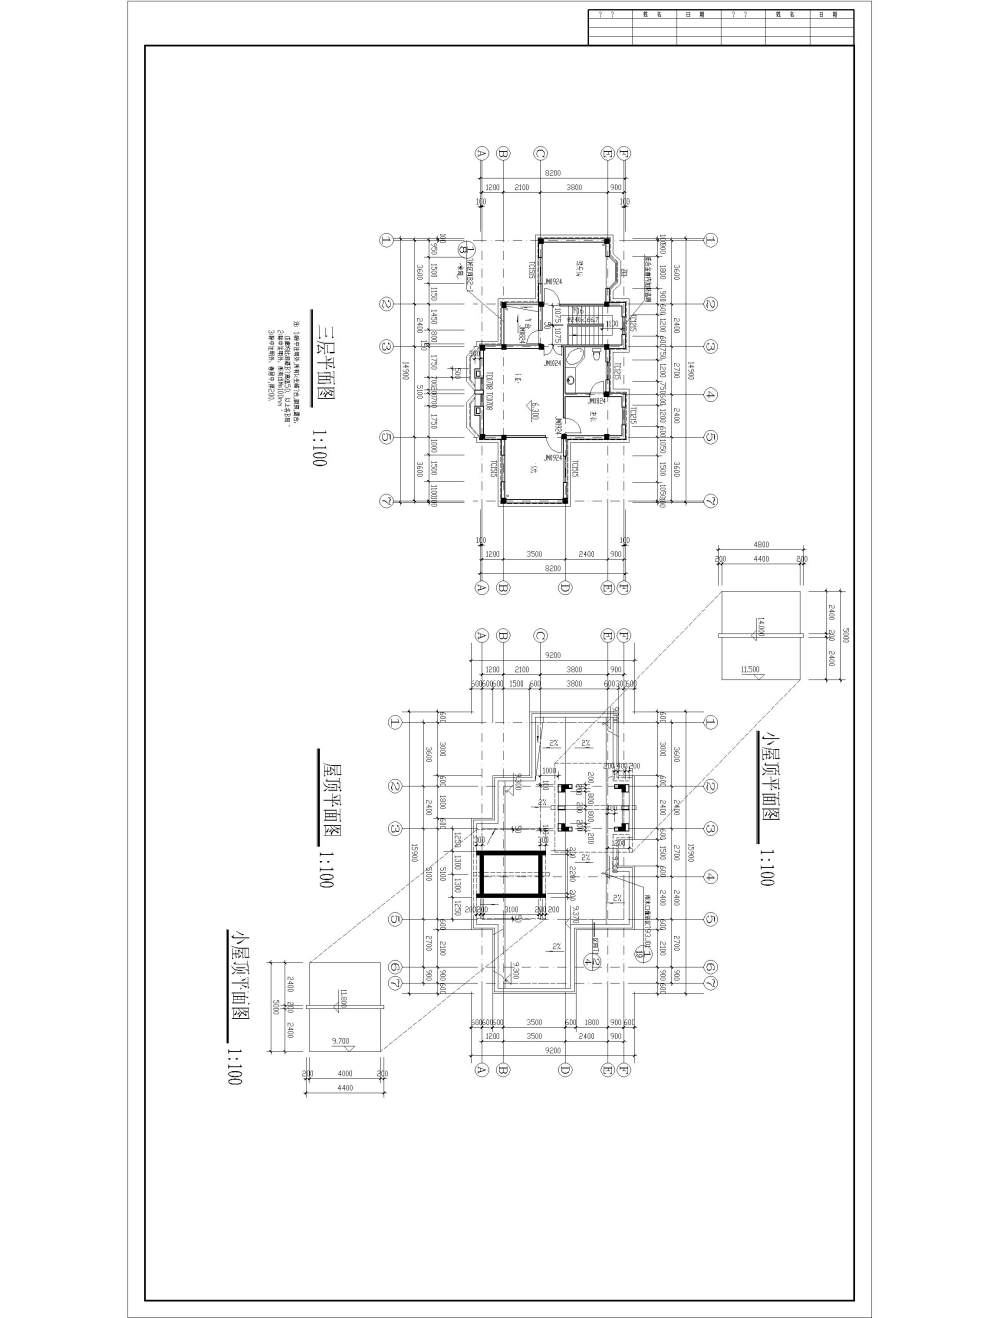 别墅建筑施工图纸-Model1.jpg